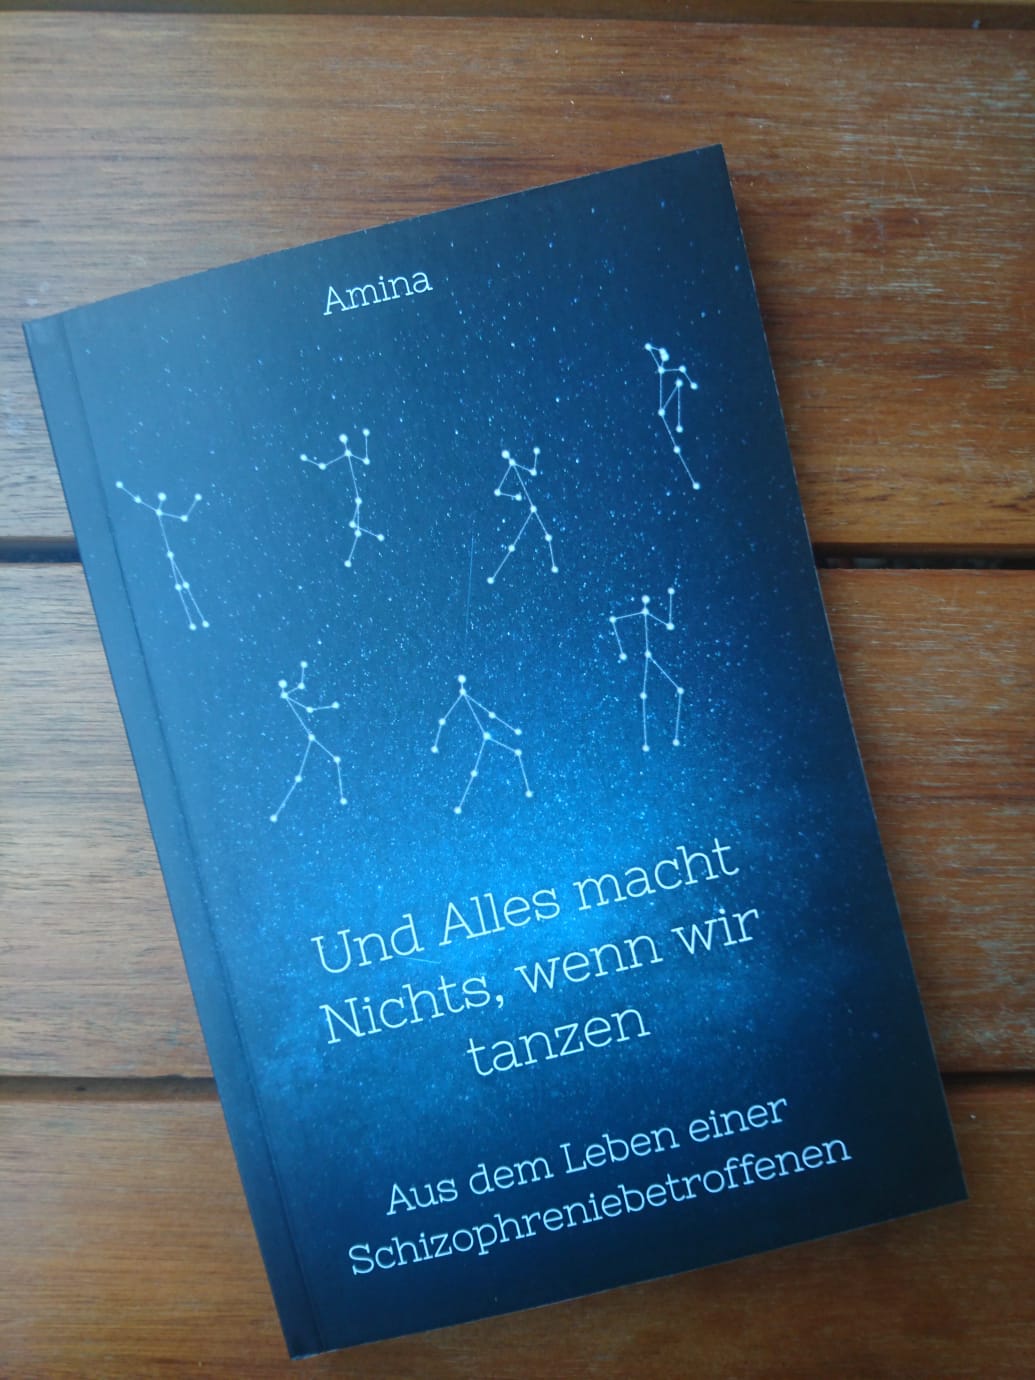 Ansicht der Druckversion des Buches der Autorin Amina Stern "Und Alles ist , wenn wir tanzen". Blau mit stilisierten Sternbildern. 